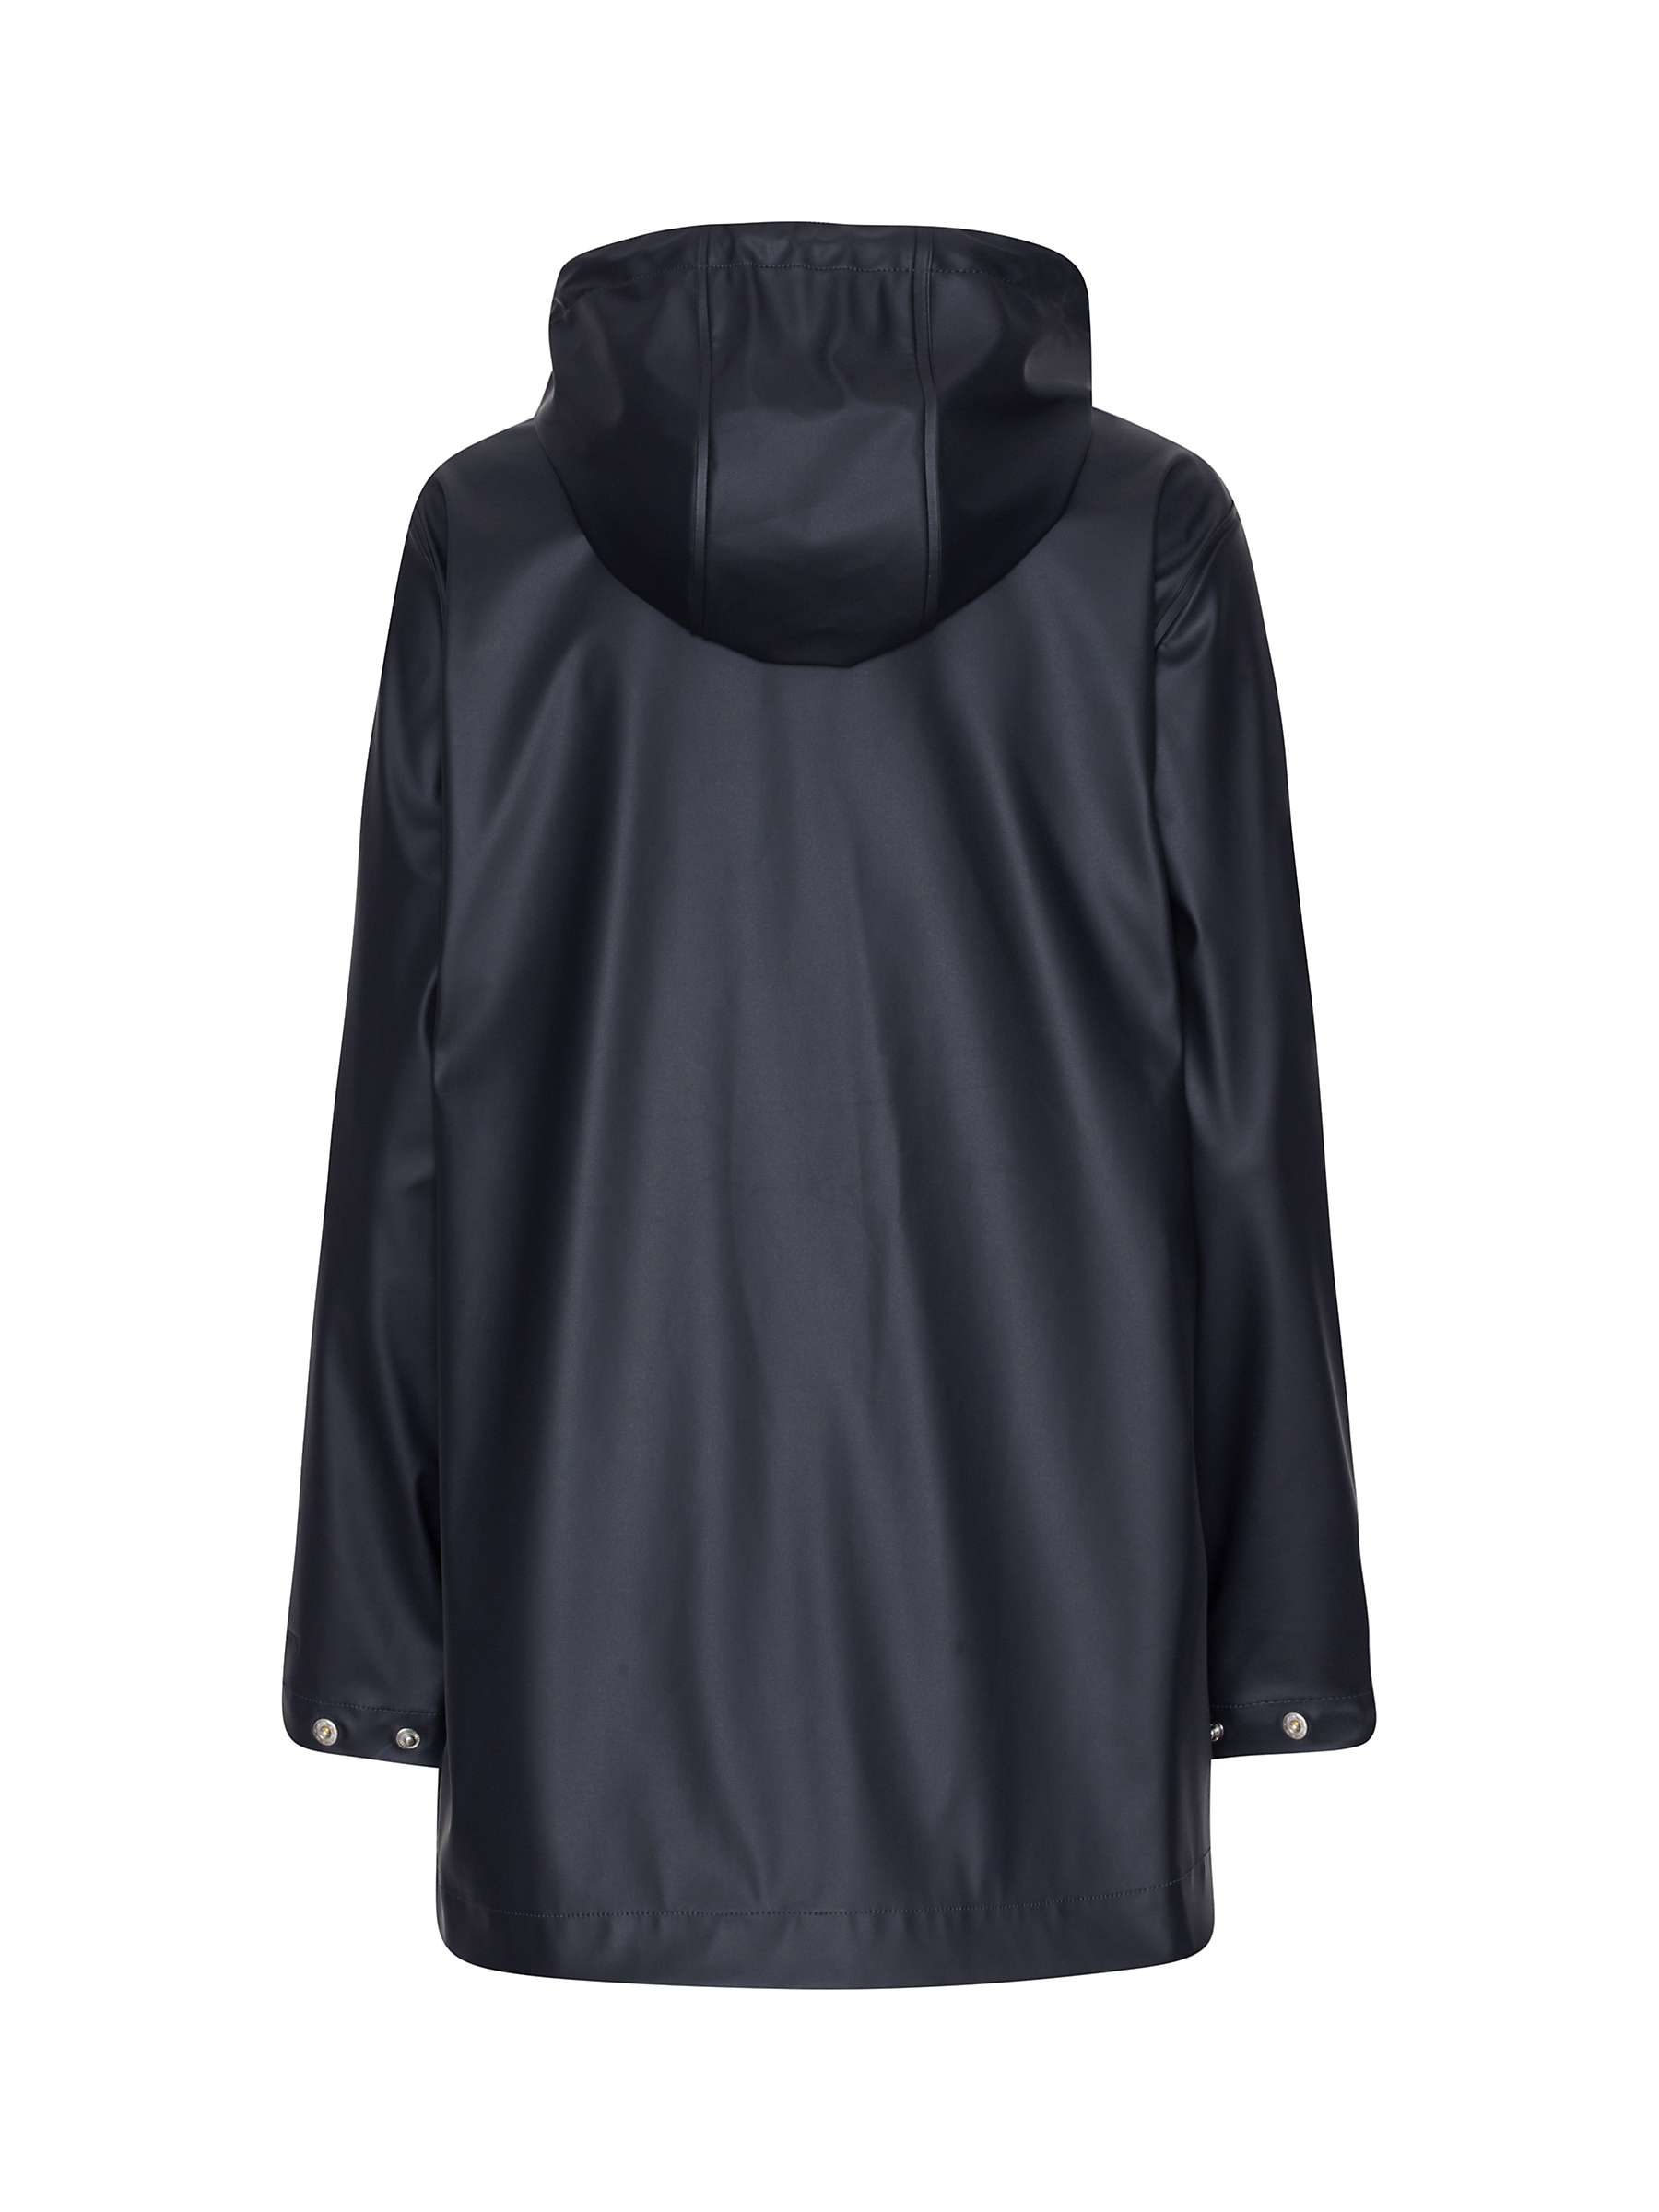 Buy Ilse Jacobsen Hornbæk Waterproof Hooded Raincoat Online at johnlewis.com